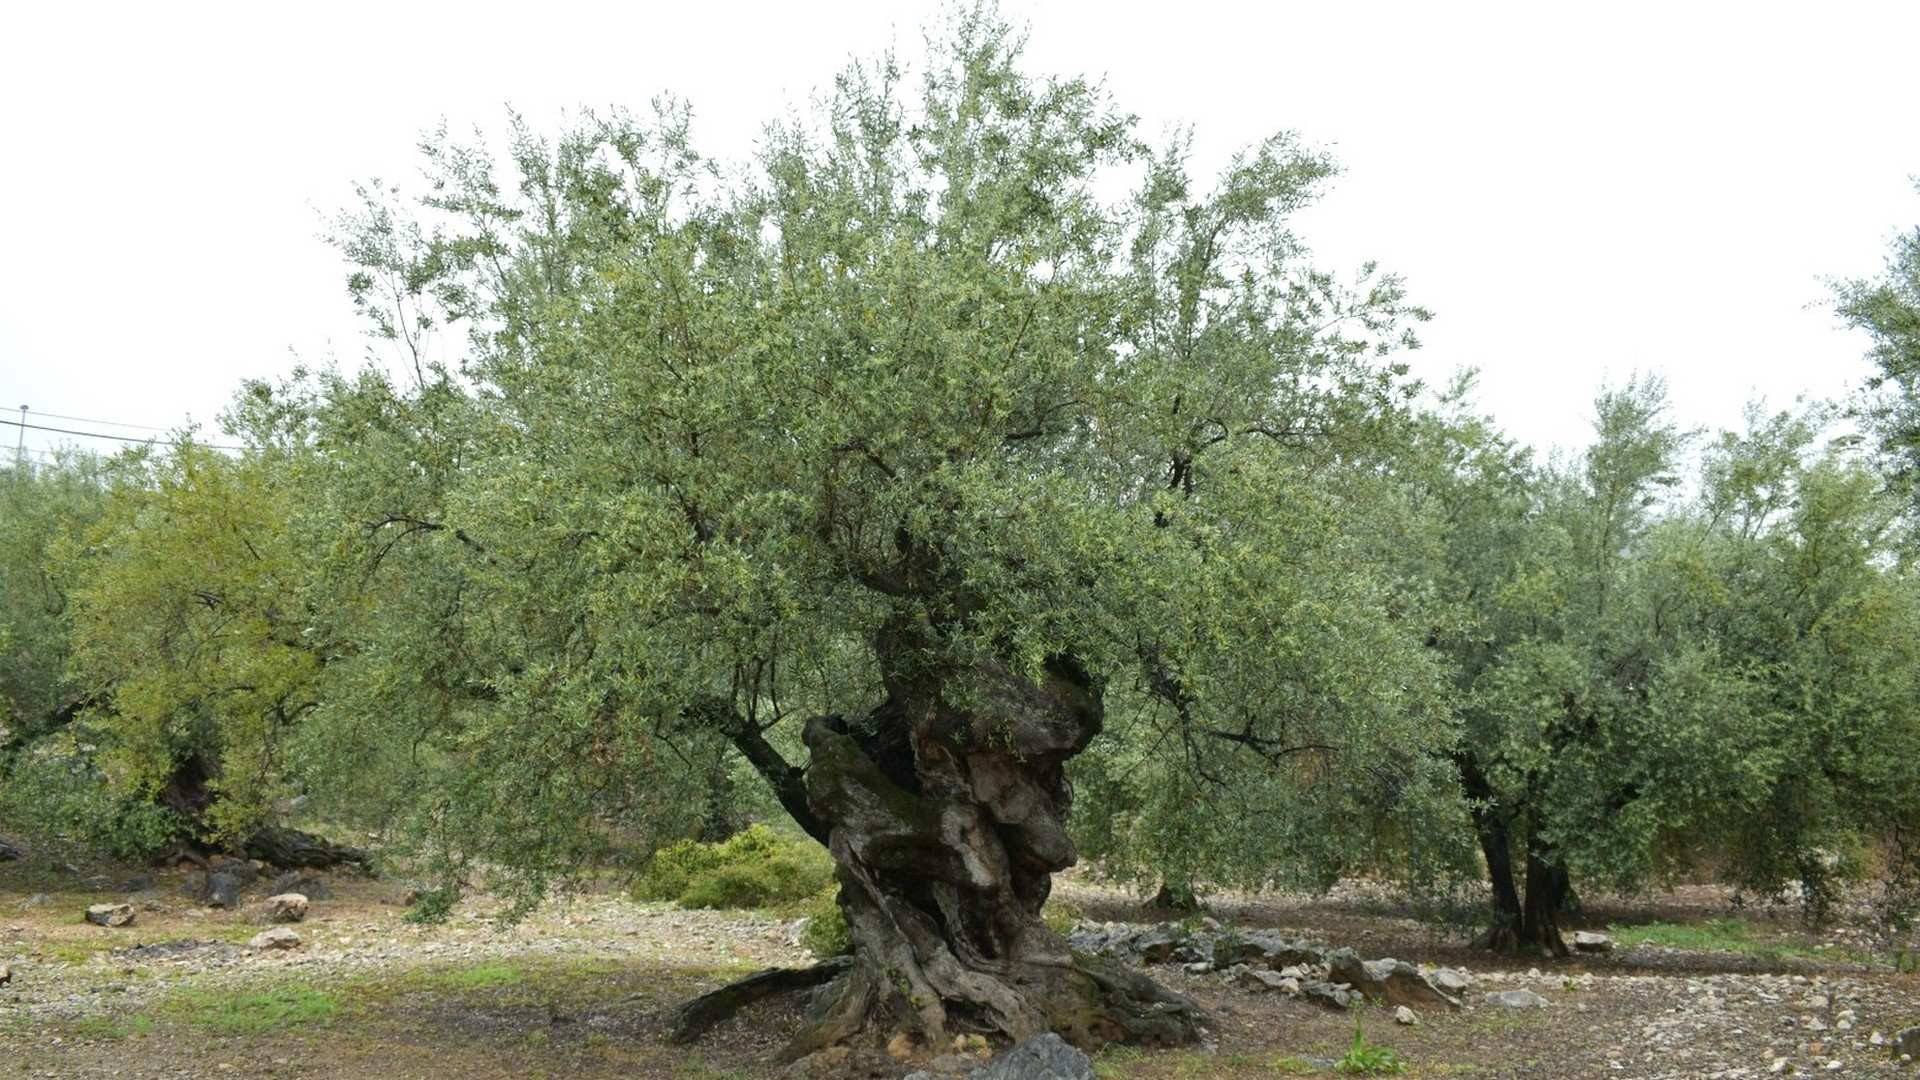 Uno de los impresionantes olivos milenarios que se encuentra en los alrededores de Periana